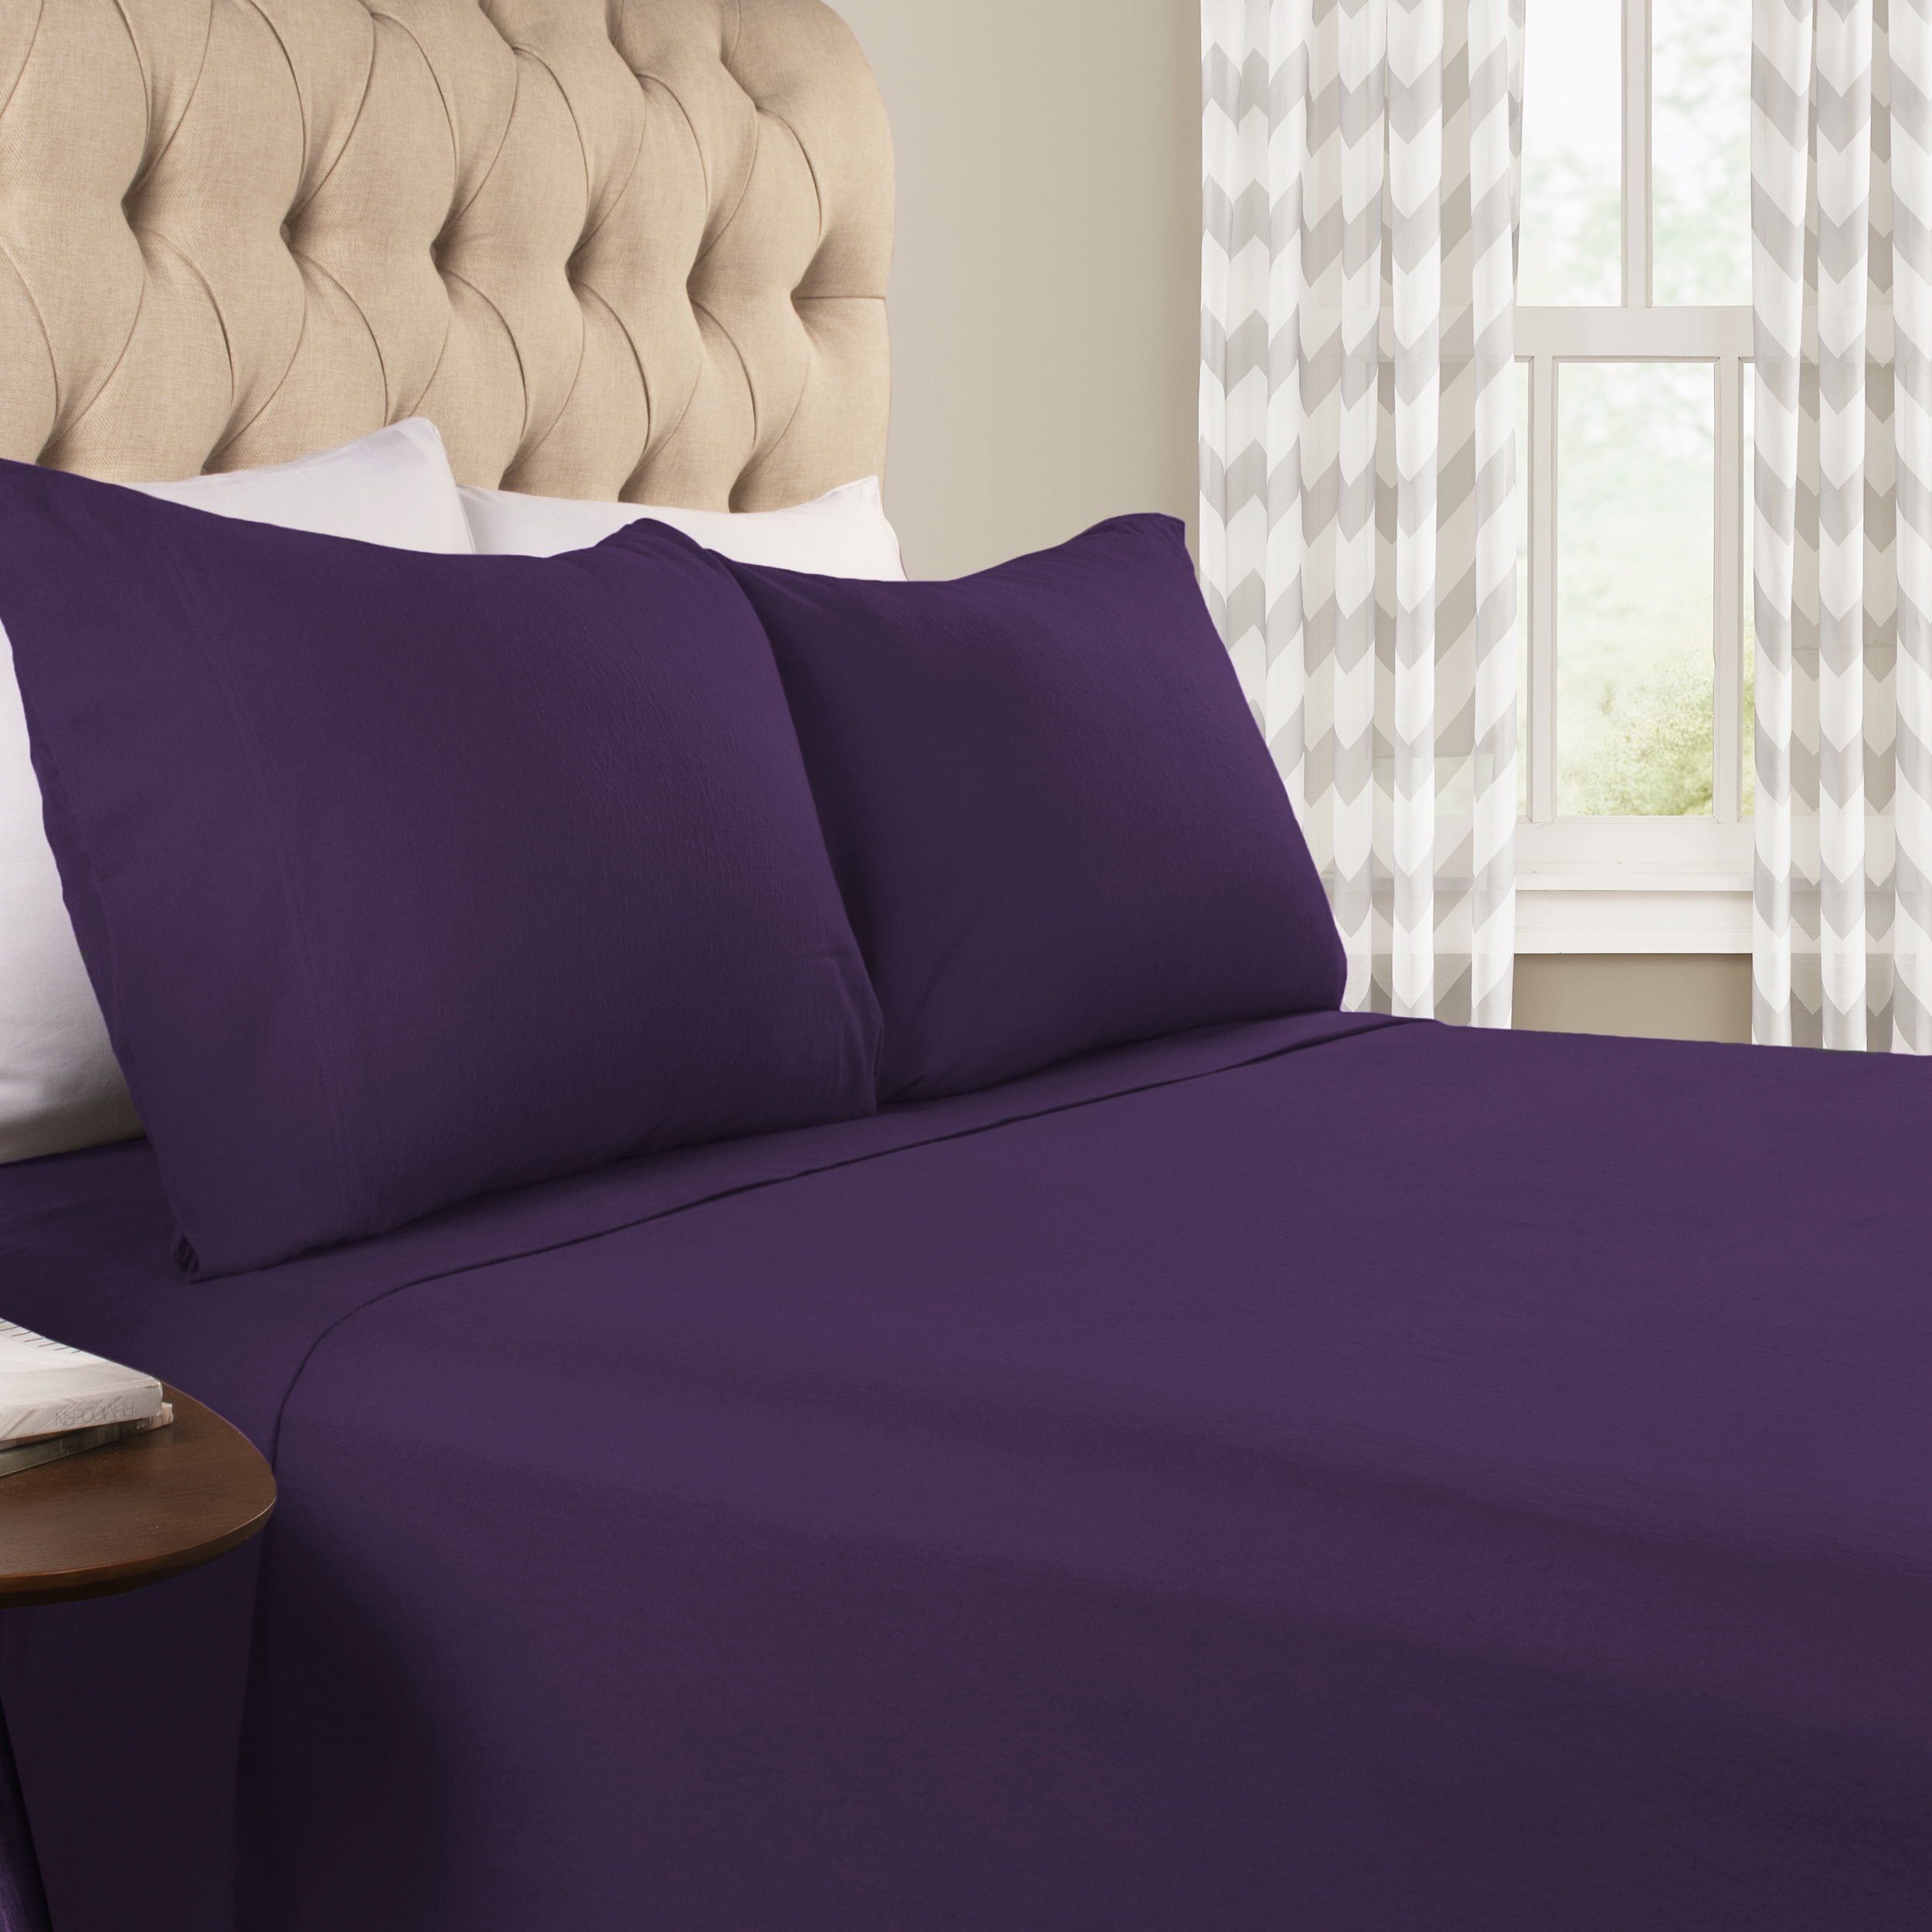 Luxury Cozy Flannel Solid Modern Sheet Set, Split King, Purple - Walmart.com